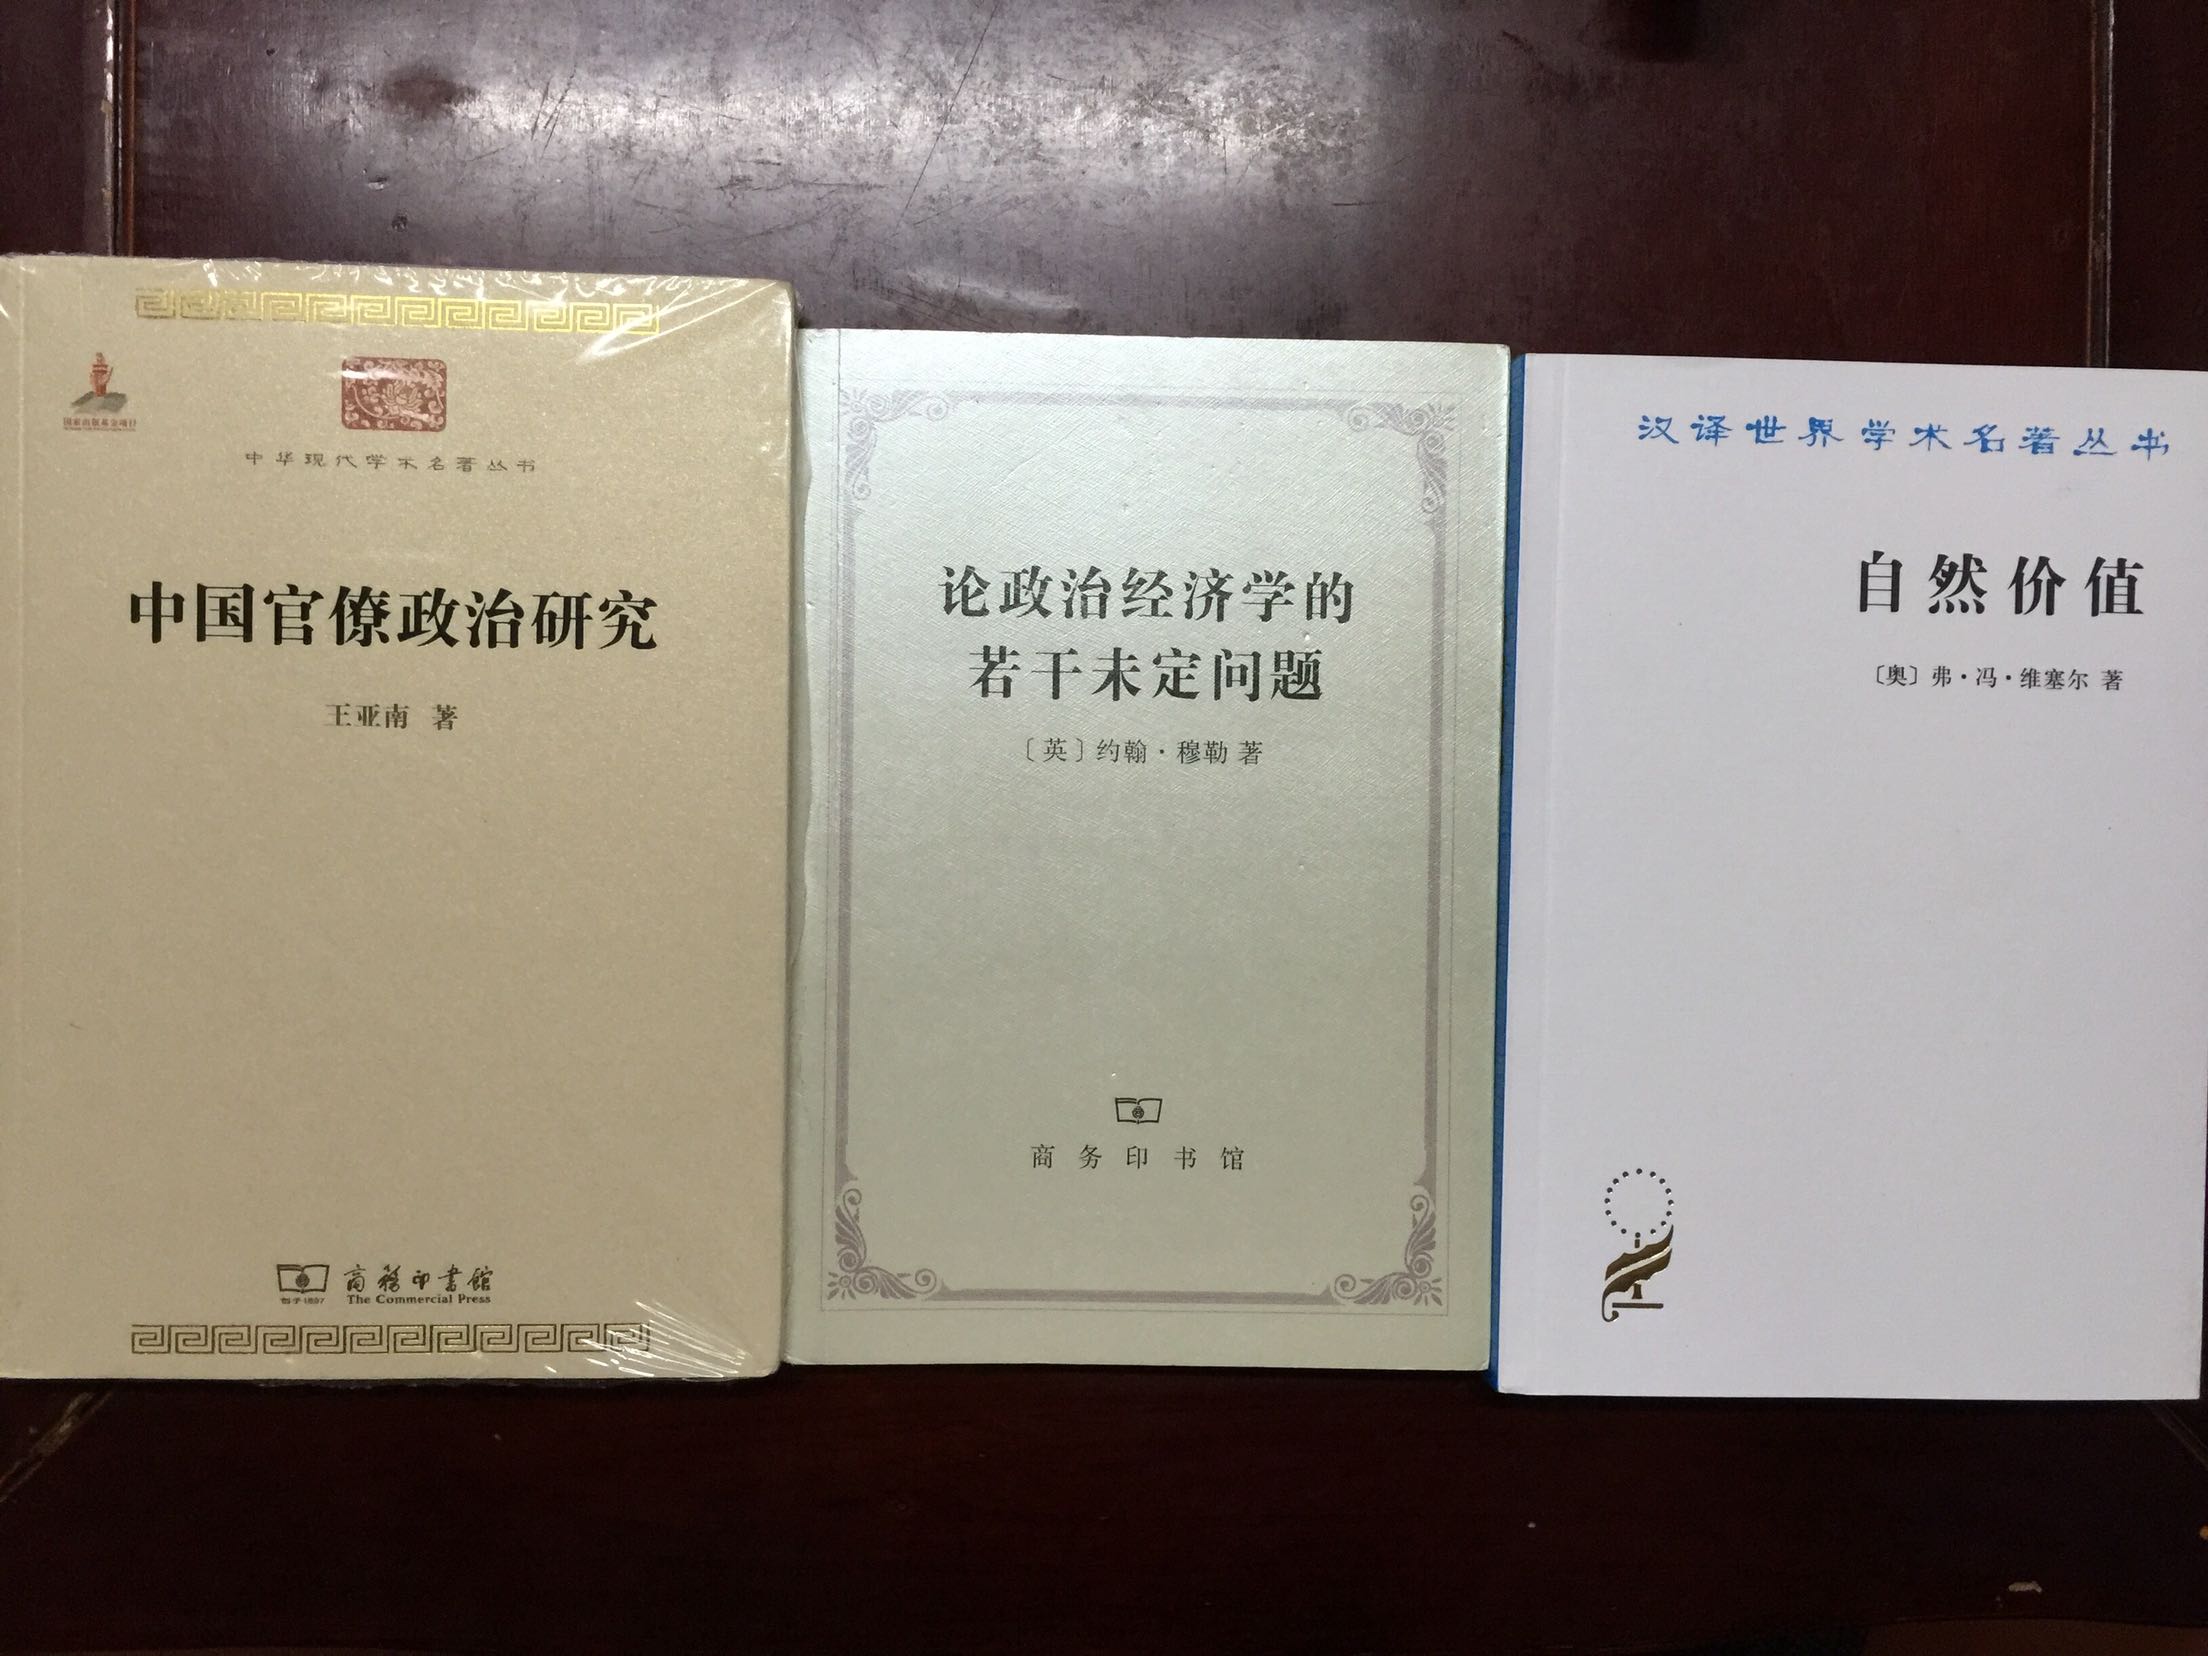 王亚南翻译了不少西方经济学作品，但没看过他本人的著作。买一本一窥究竟。书包装不错，价格公道，支持。